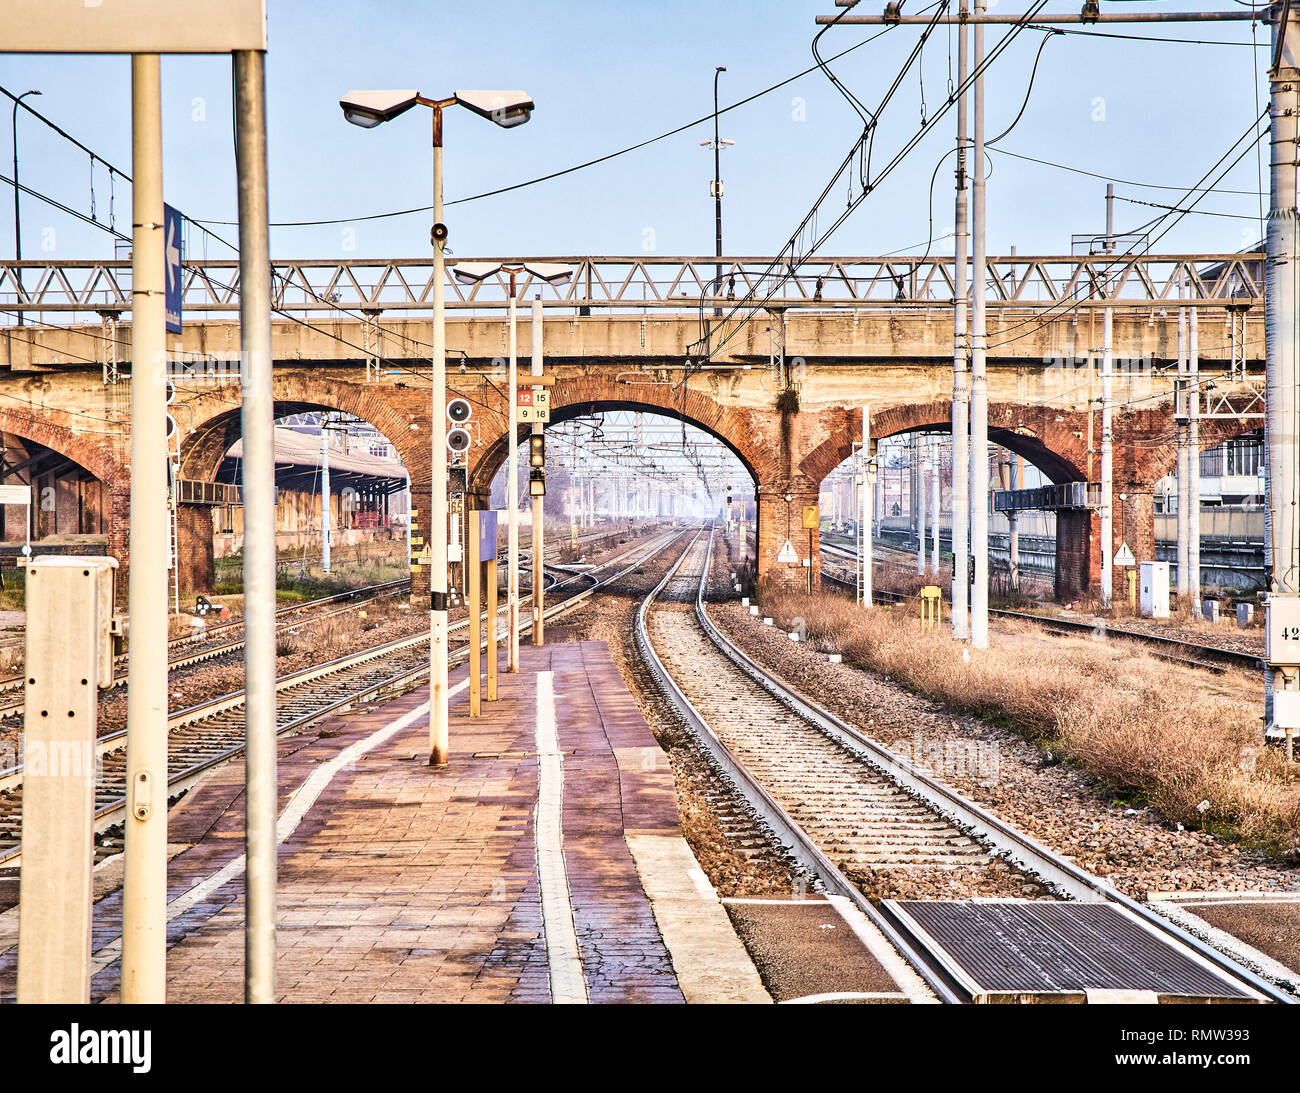 Ferrocarril con catenarias cruzando un viejo puente de ladrillos en una estación de tren europeo. Foto de stock